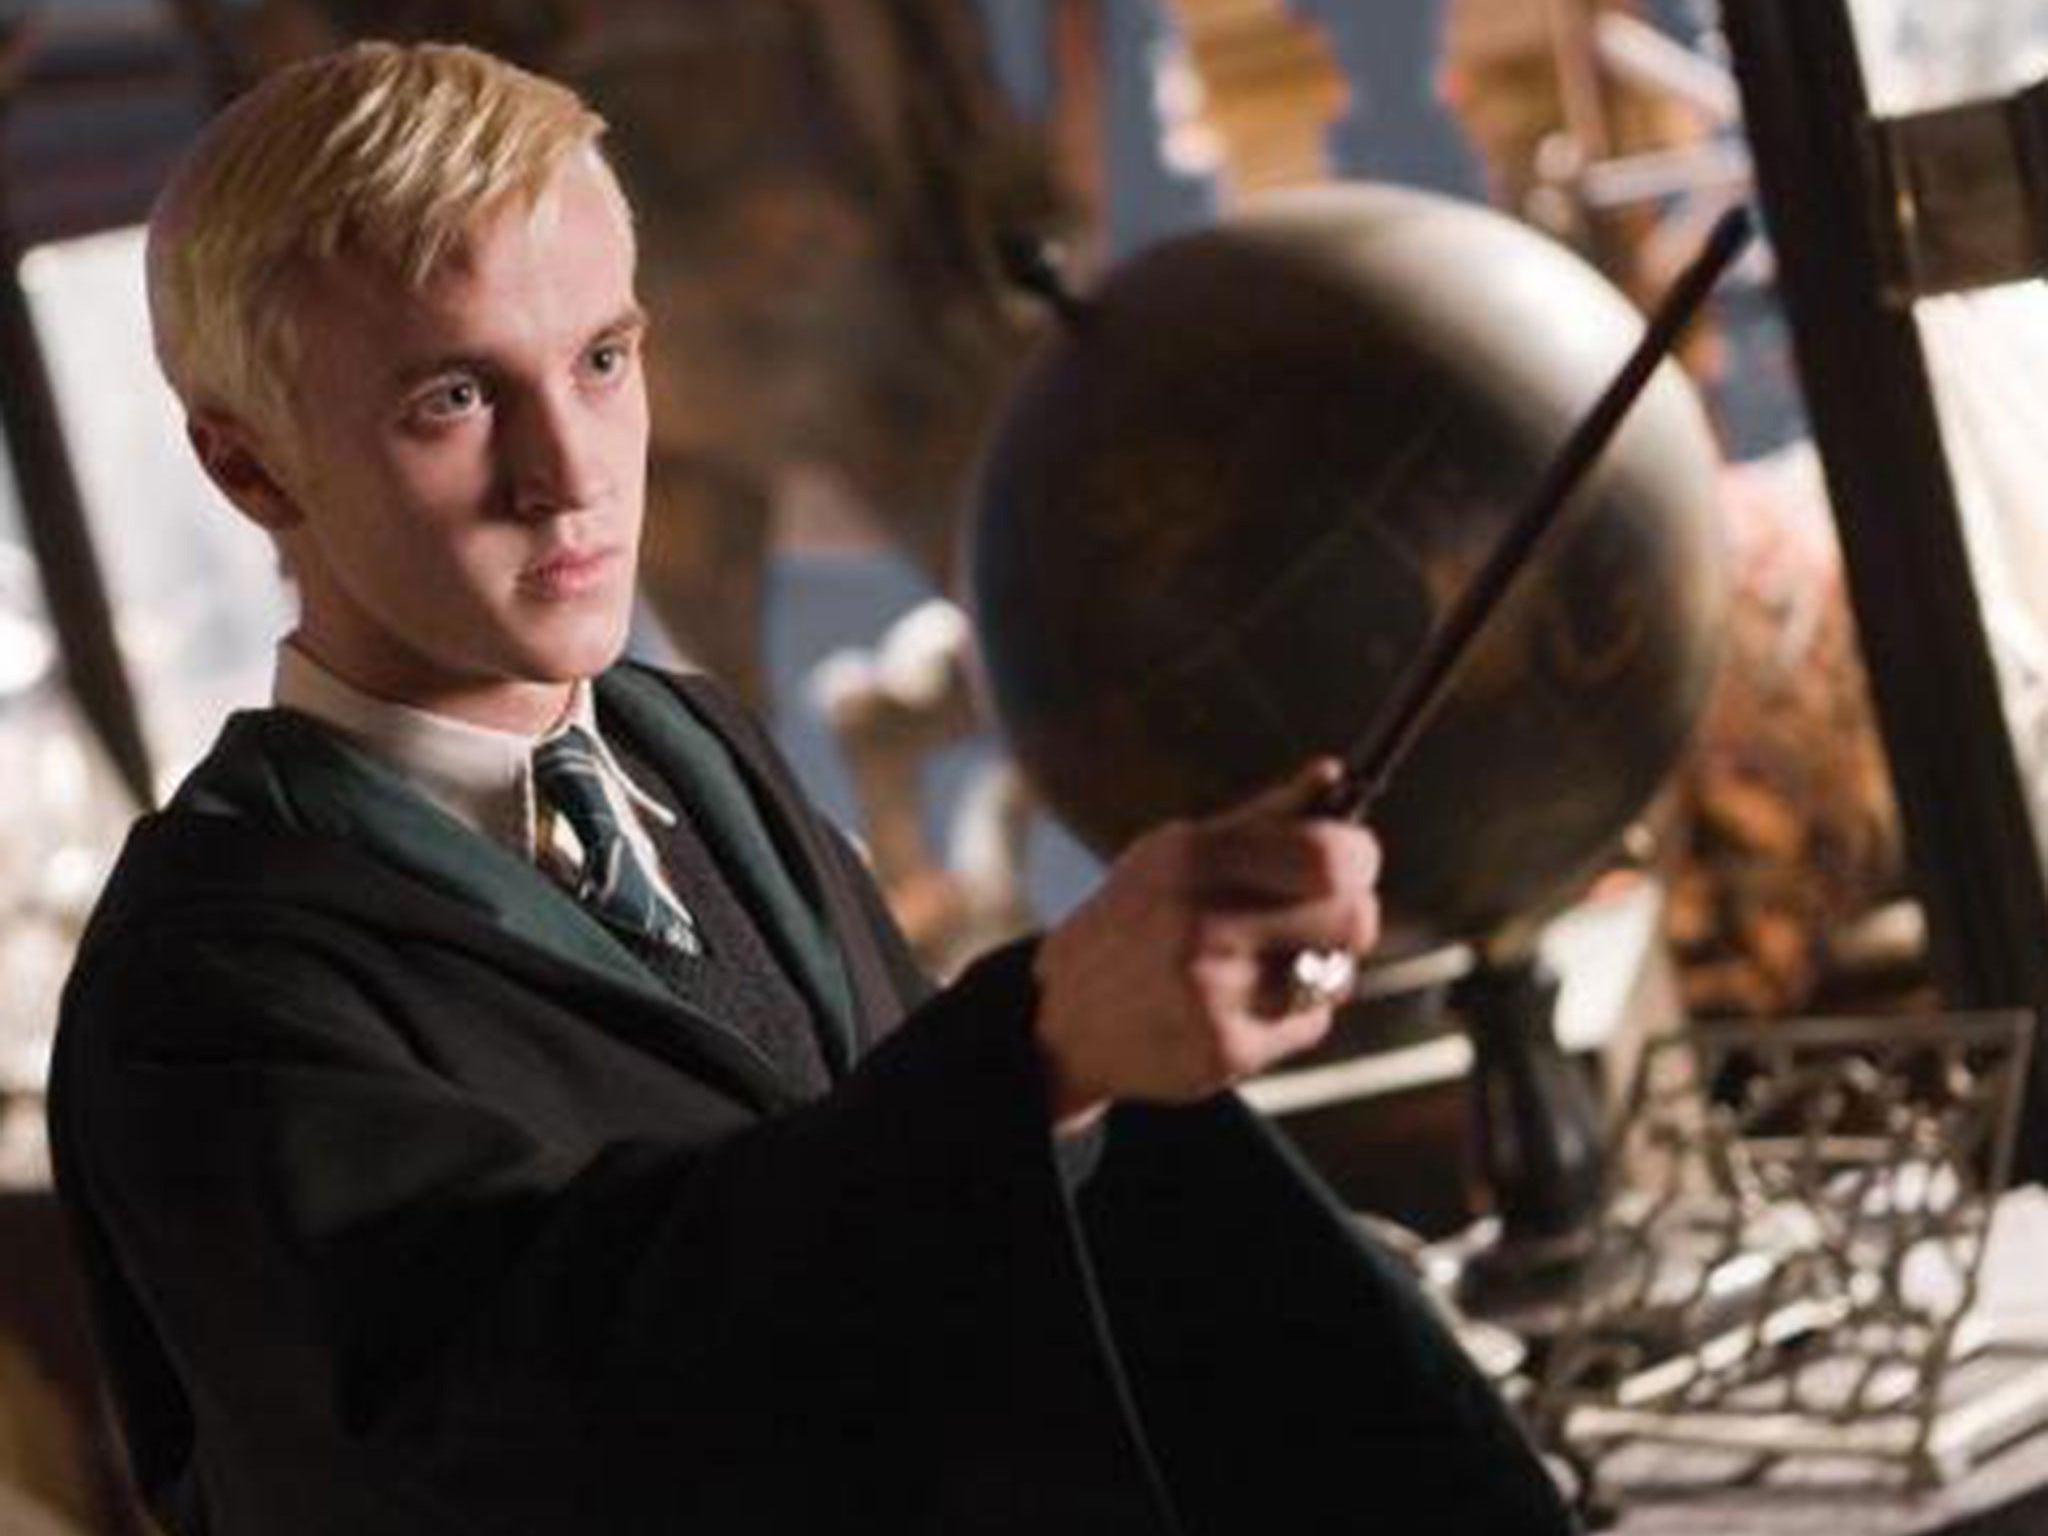 Tom Felton plays evil Harry Potter character Draco Malfoy